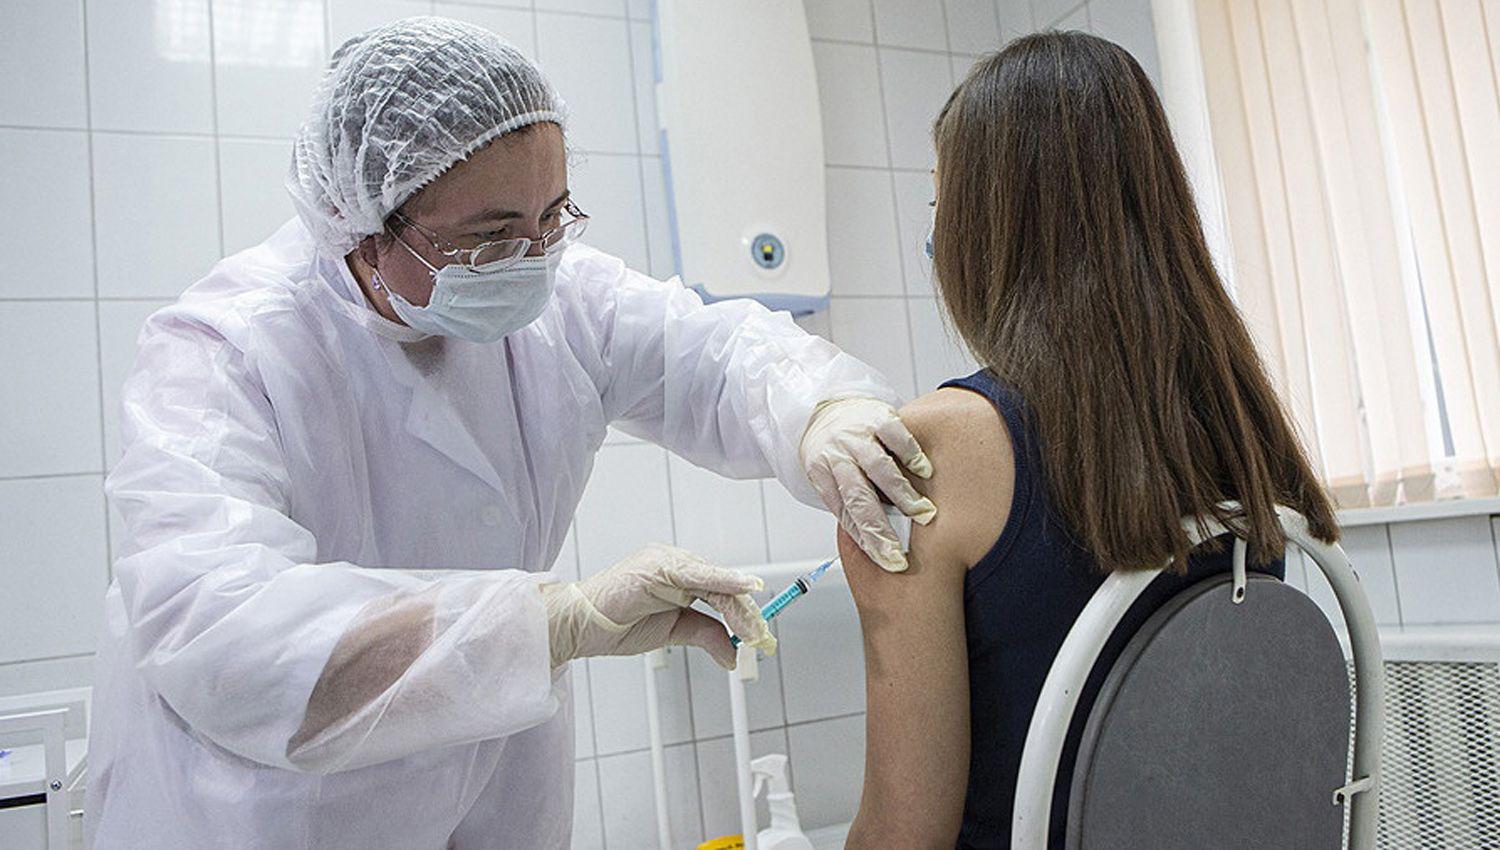 Estiman que unos 15 millones de argentinos no seraacuten vacunados contra el coronavirus durante este antildeo